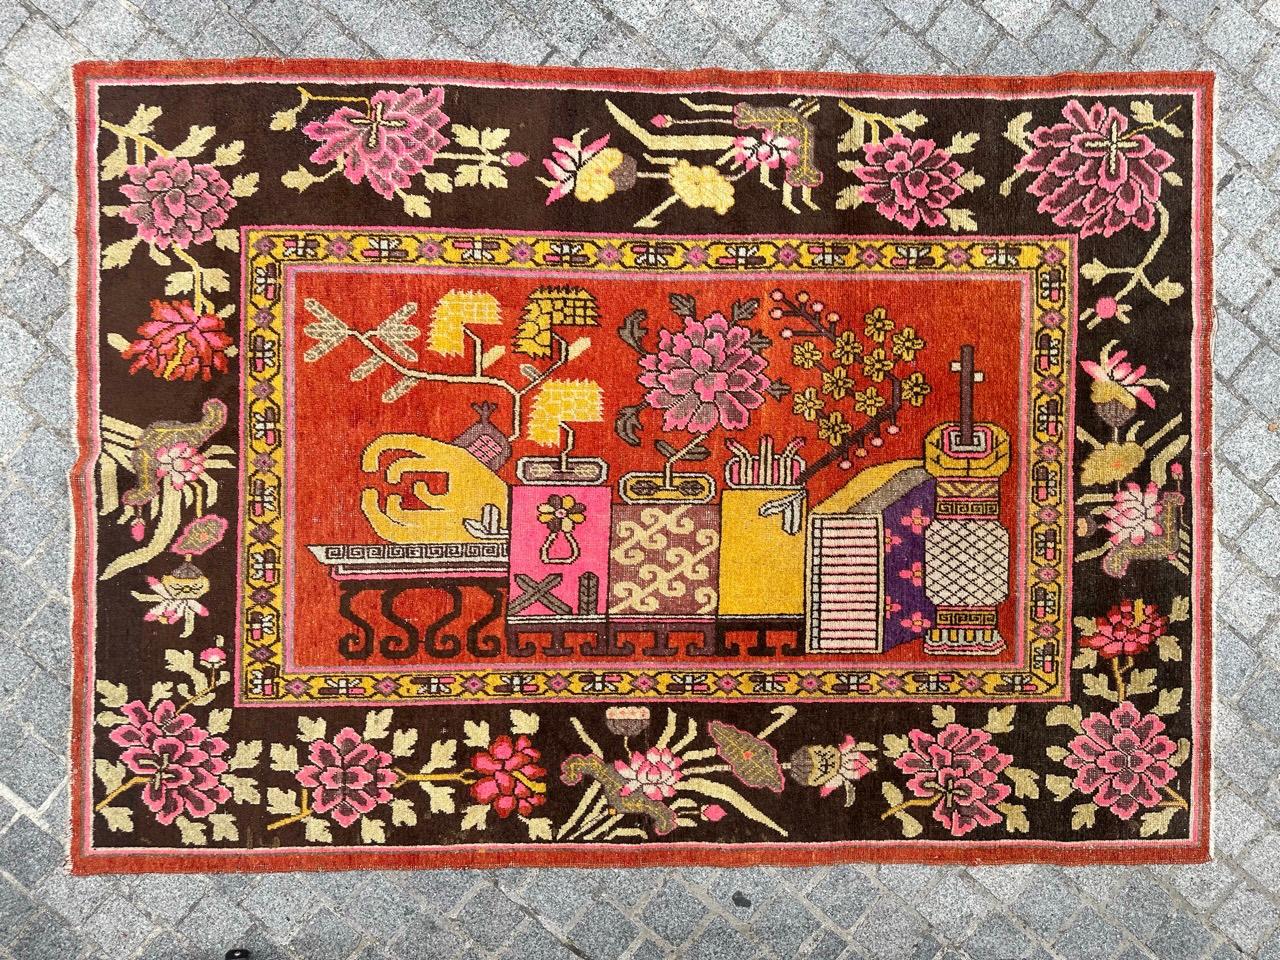 Exquisiter chinesischer Khotan-Teppich mit zentralem figürlichem Design und floralen Vasen. Es gibt einen dekorativen Hocker, der mit Blumenvasen in Rosa-, Gelb-, Violett-, Braun- und Beigetönen geschmückt ist. Die stilisierten Vasen sind in